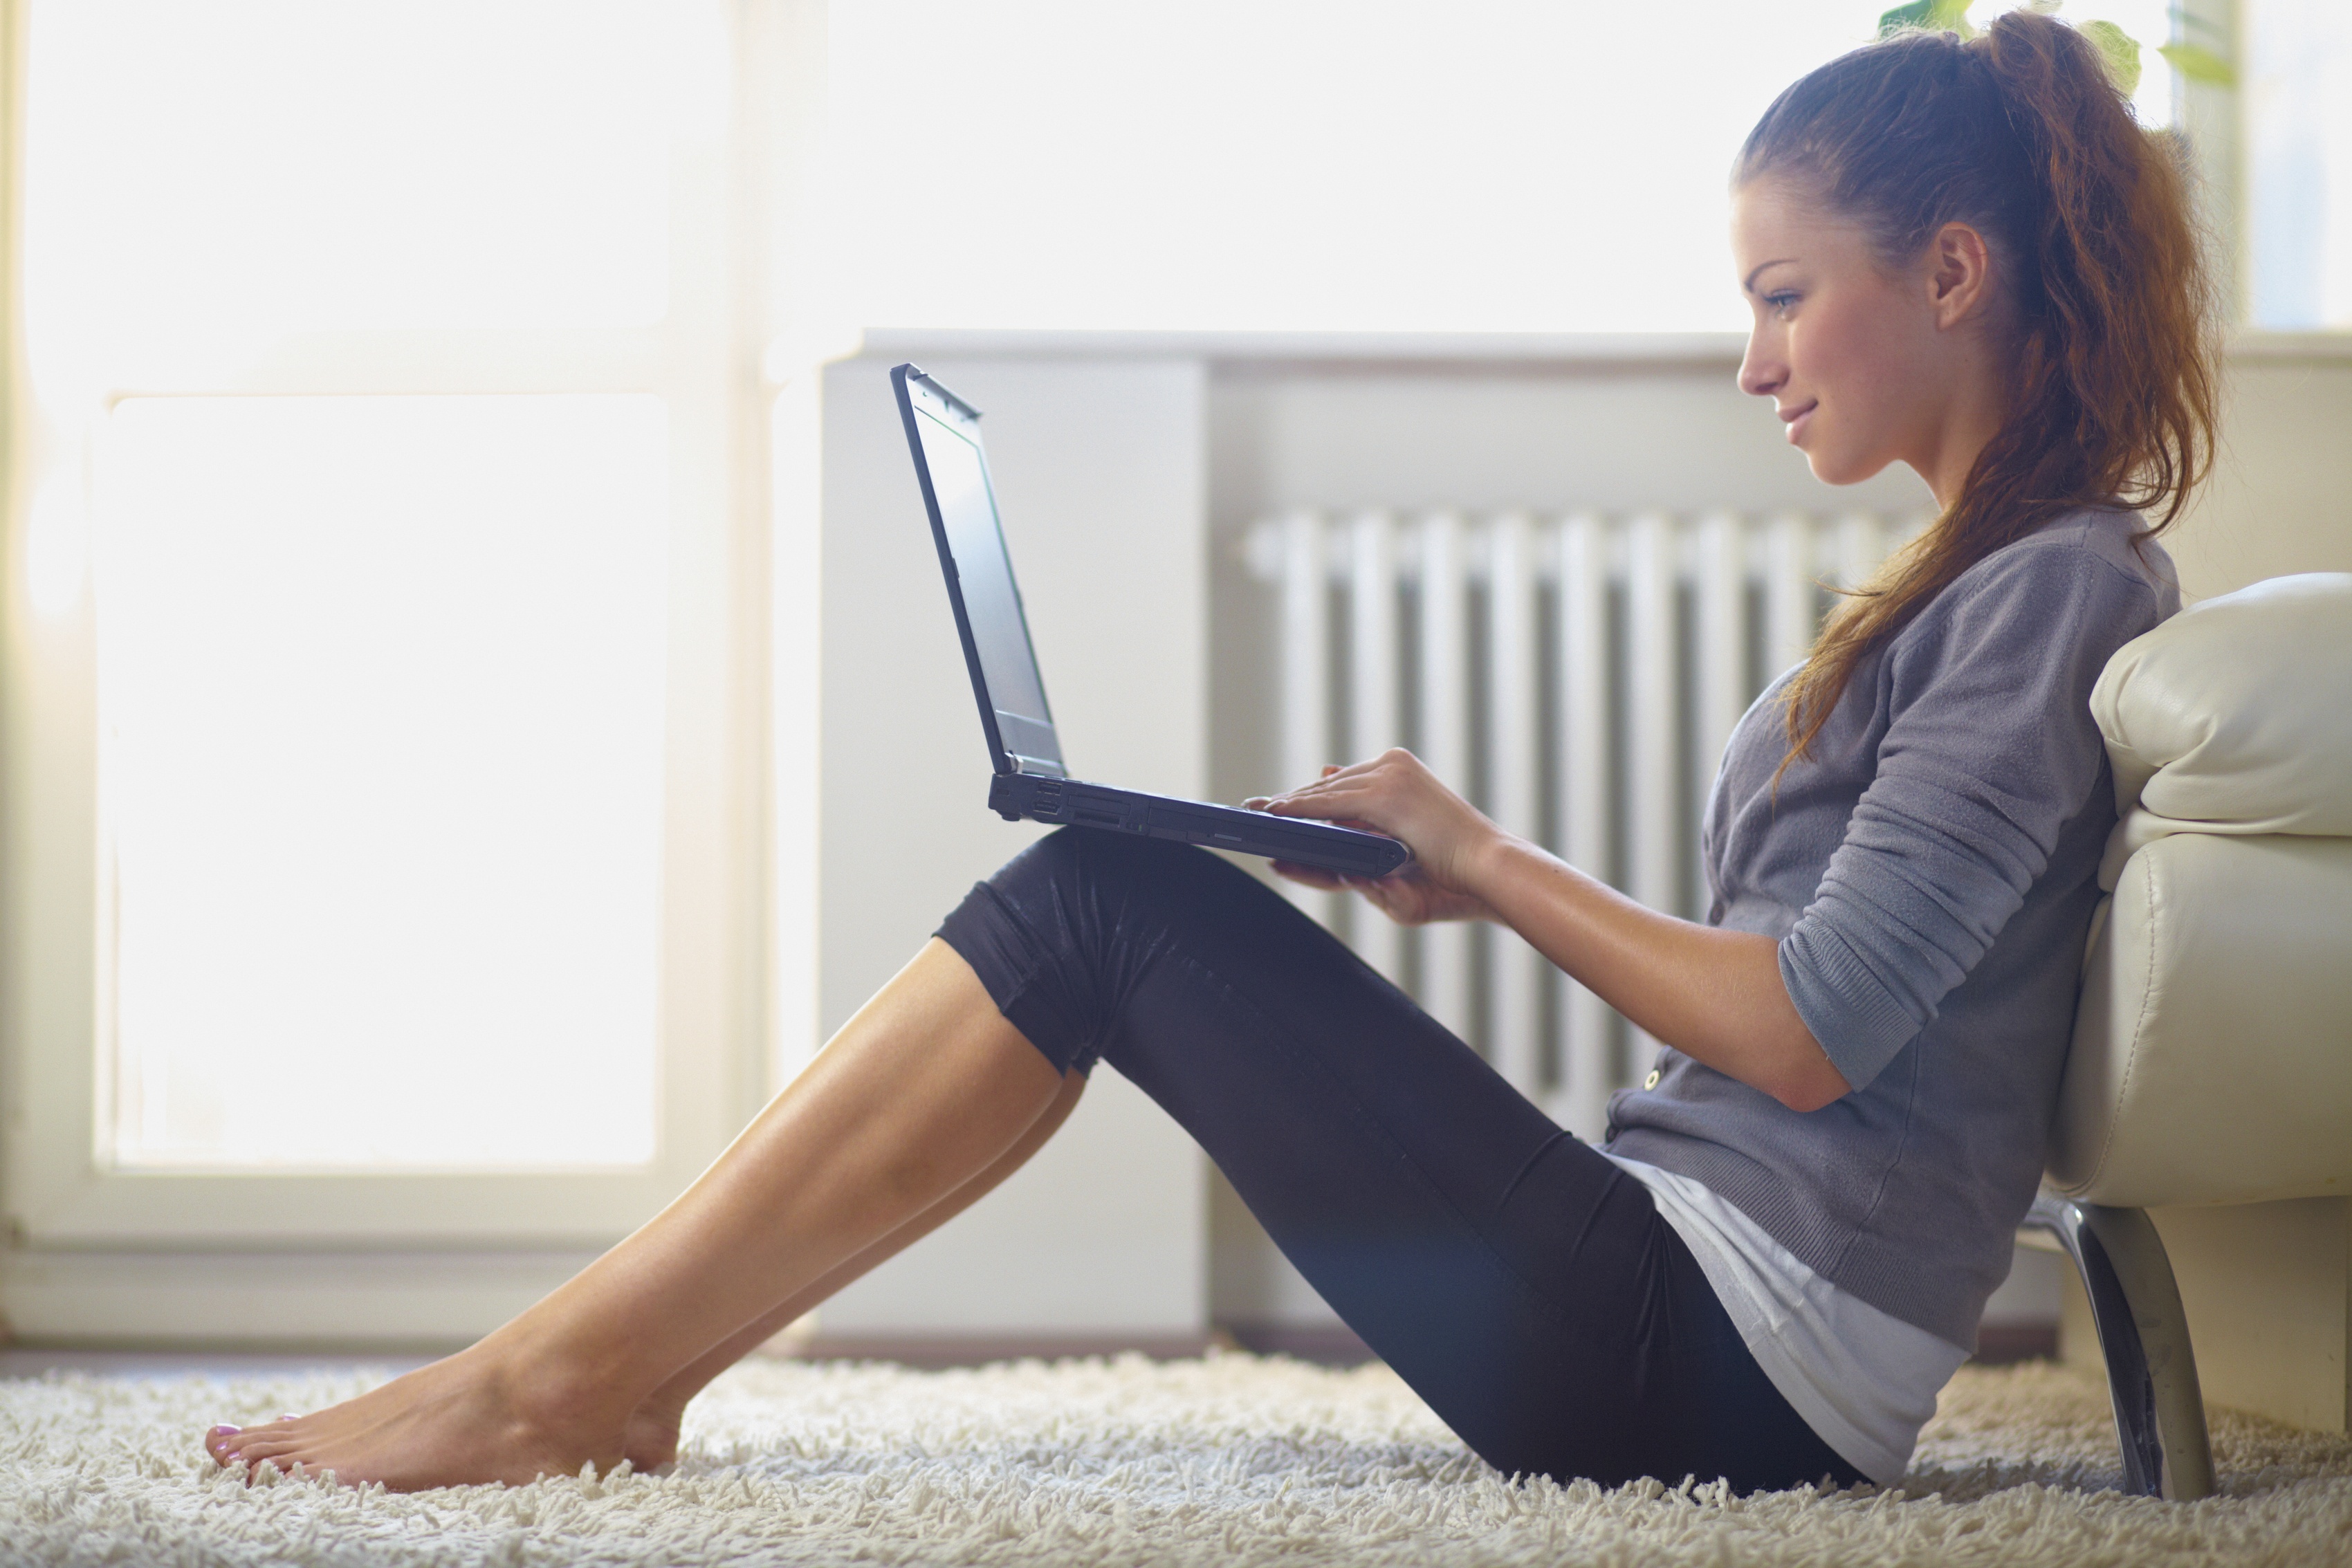 Сайт смотрим. Девушка с ноутбуком. Девушка за ноутбуком. Девушка сидит в интернете. Женщина сидит за компьютером.